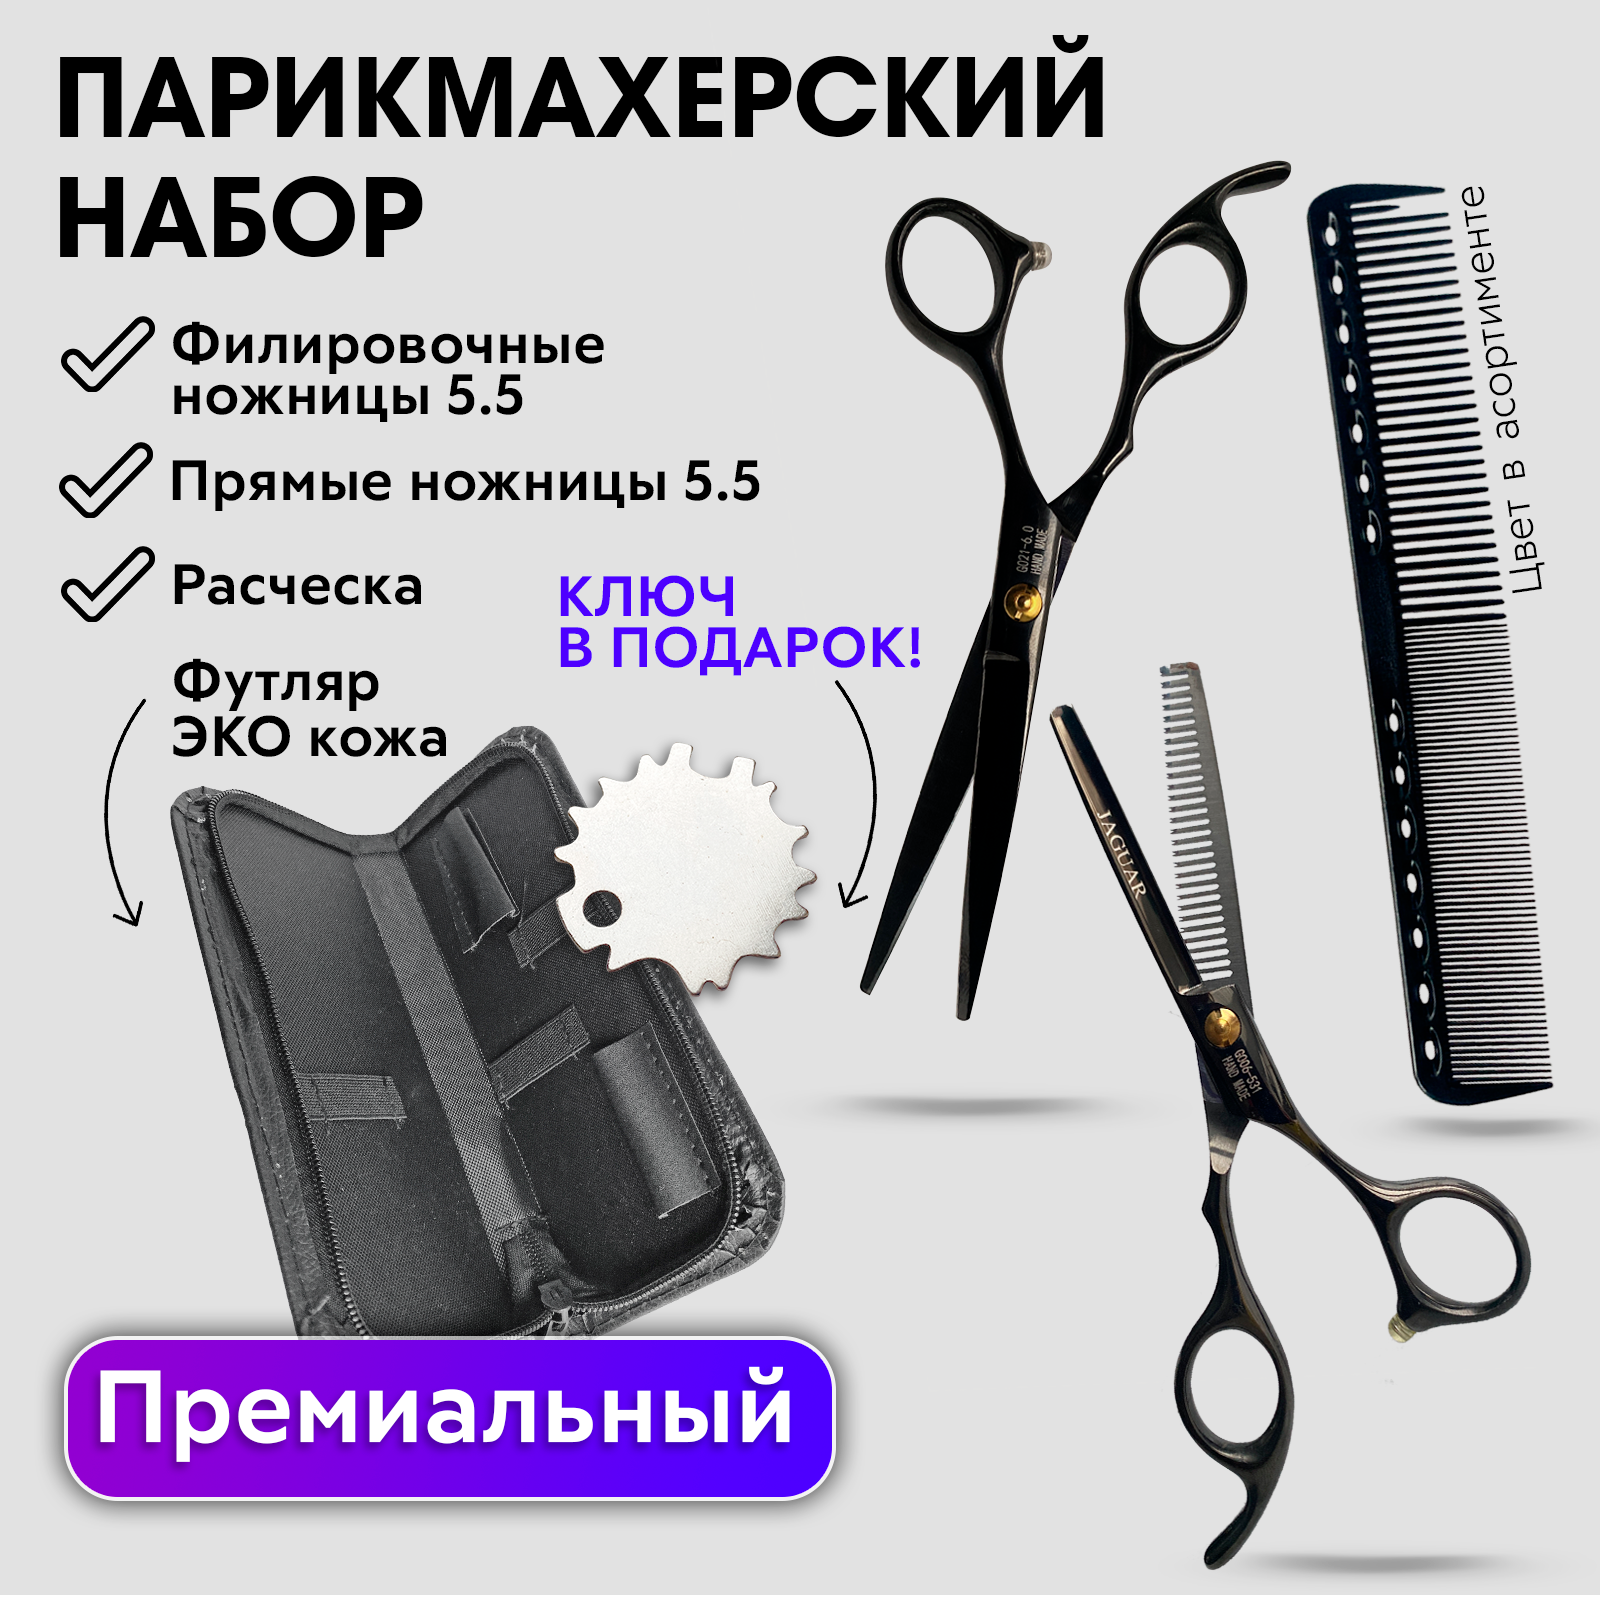 Набор Hожницы парикмахерские прямые Charites ножницы филировочные размер 5.5 черные+1485 набор парикмахера revolut ножницы парикмахерские профессиональные